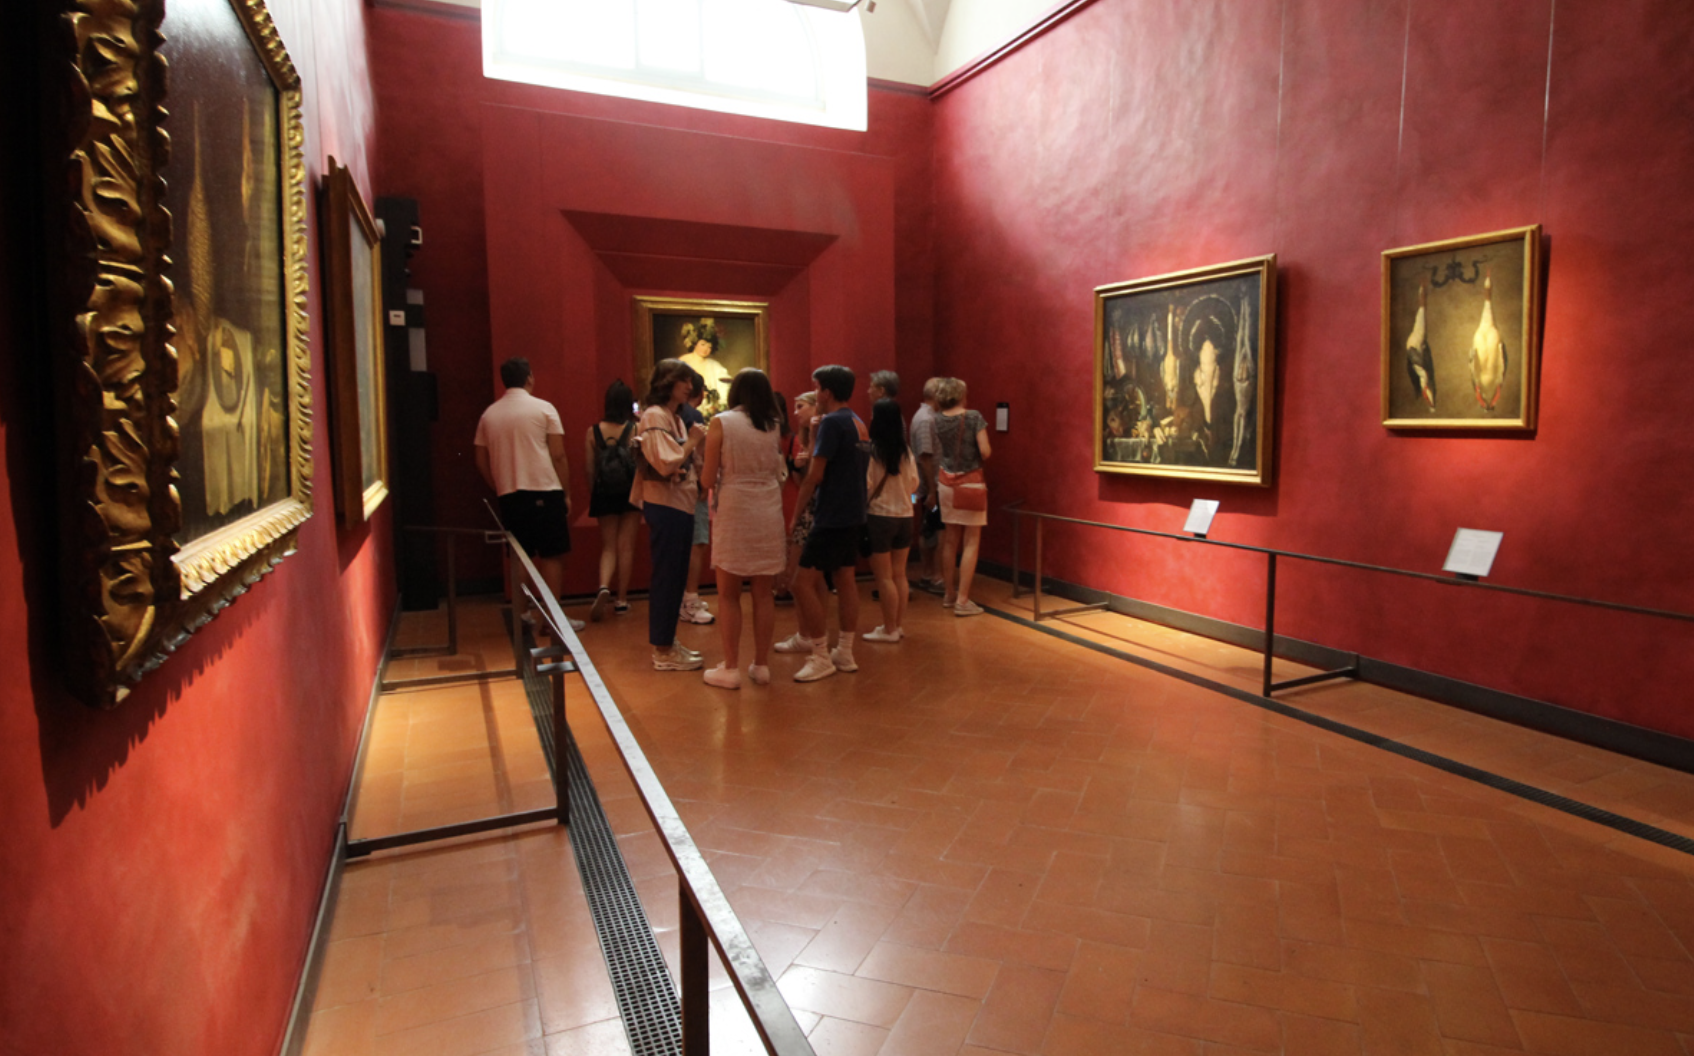 The Caravaggio Room at the Uffizi Museum